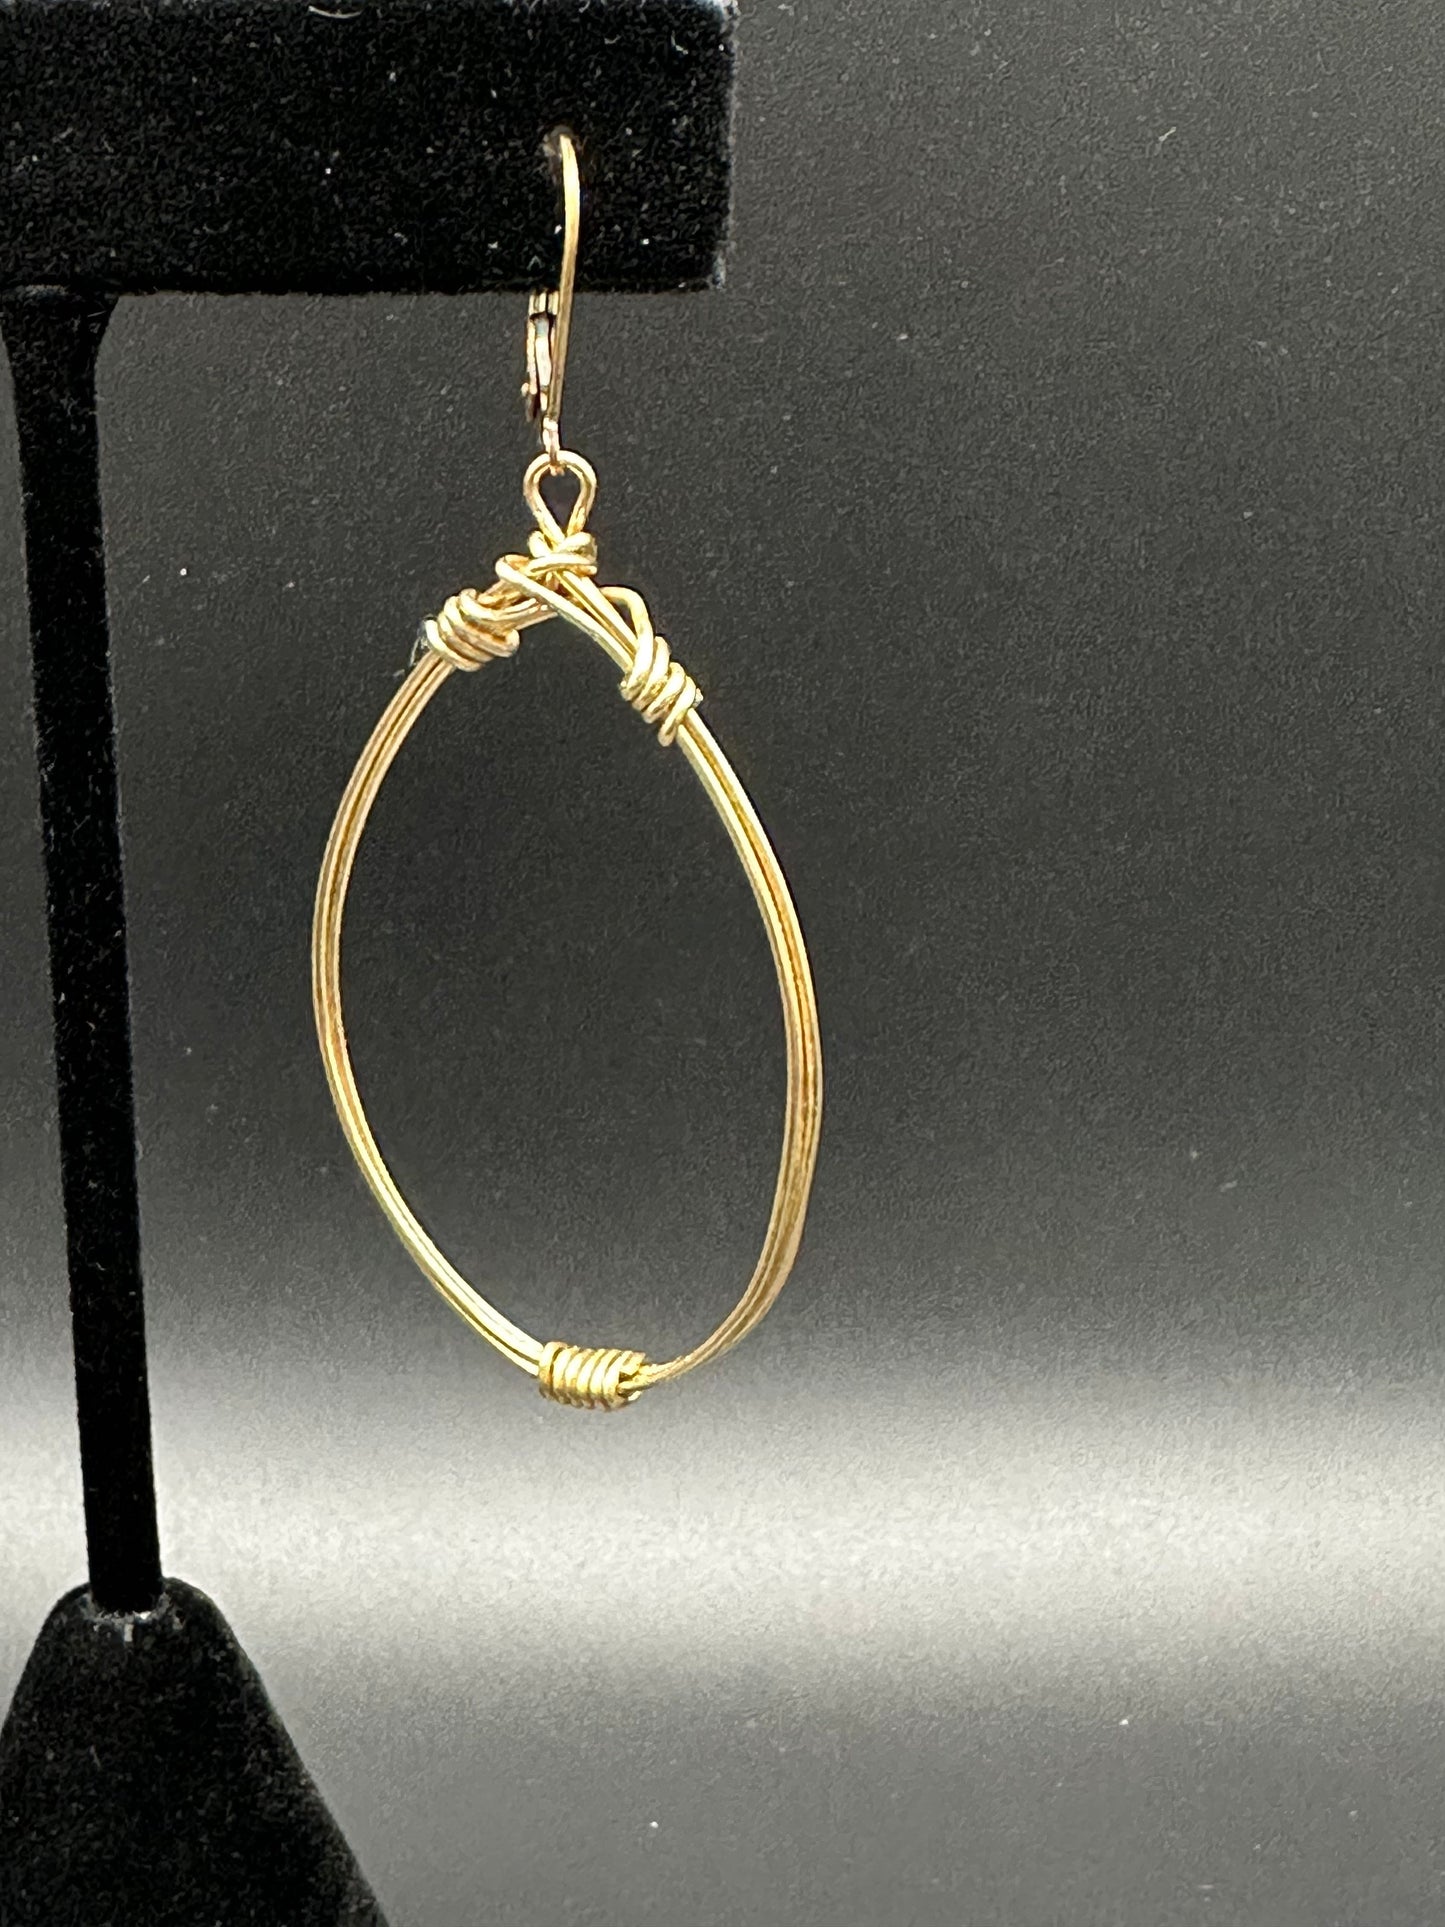 Bella Bloom Earrings - 14k Gold Fill Wire Wrap Hoops